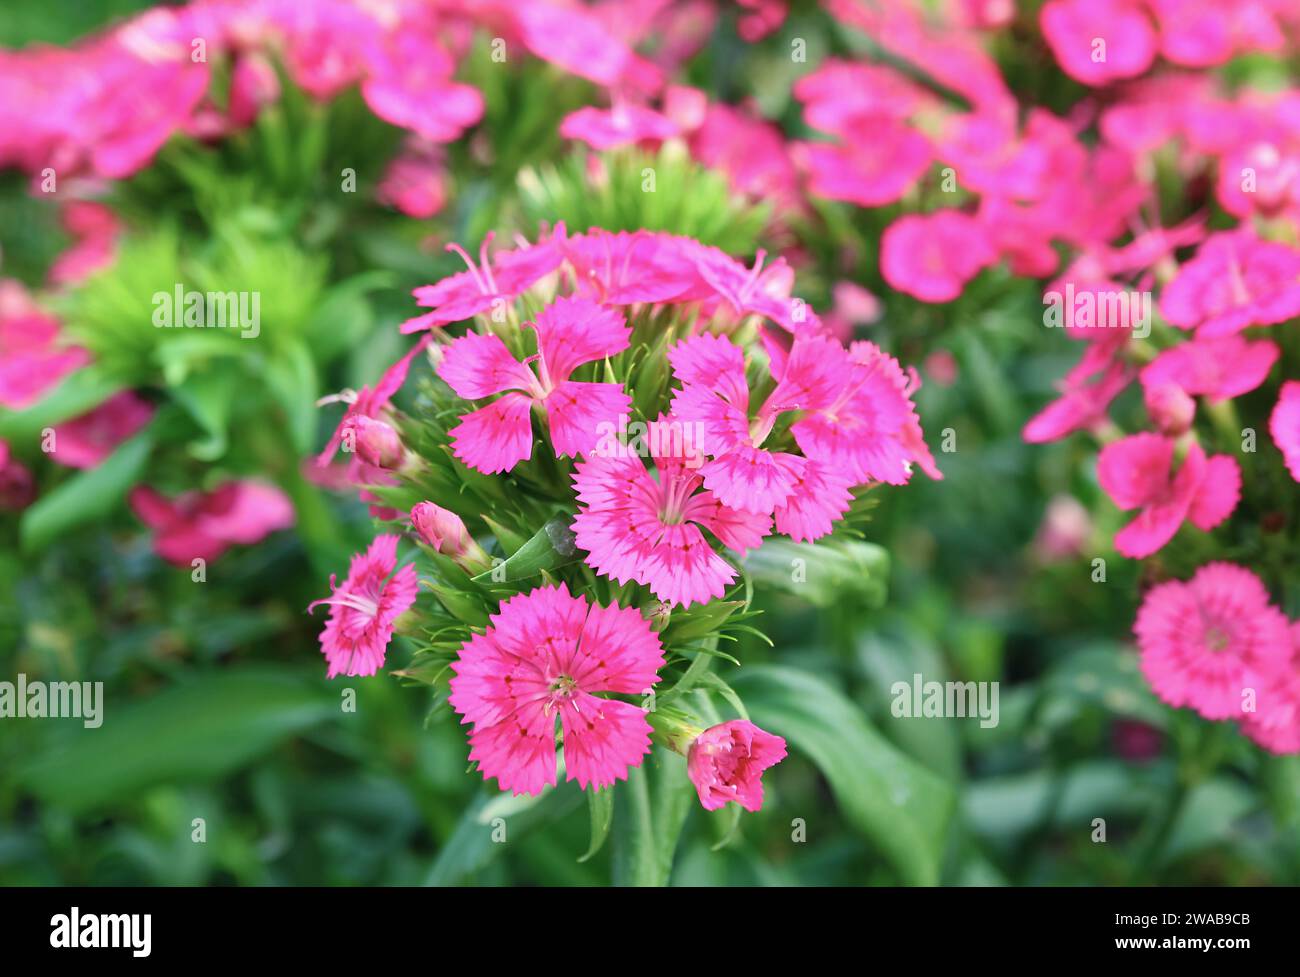 Nahaufnahme eines Bündels von wunderschönen rosa Dianthus Blumen, die im Sonnenlicht blühen Stockfoto